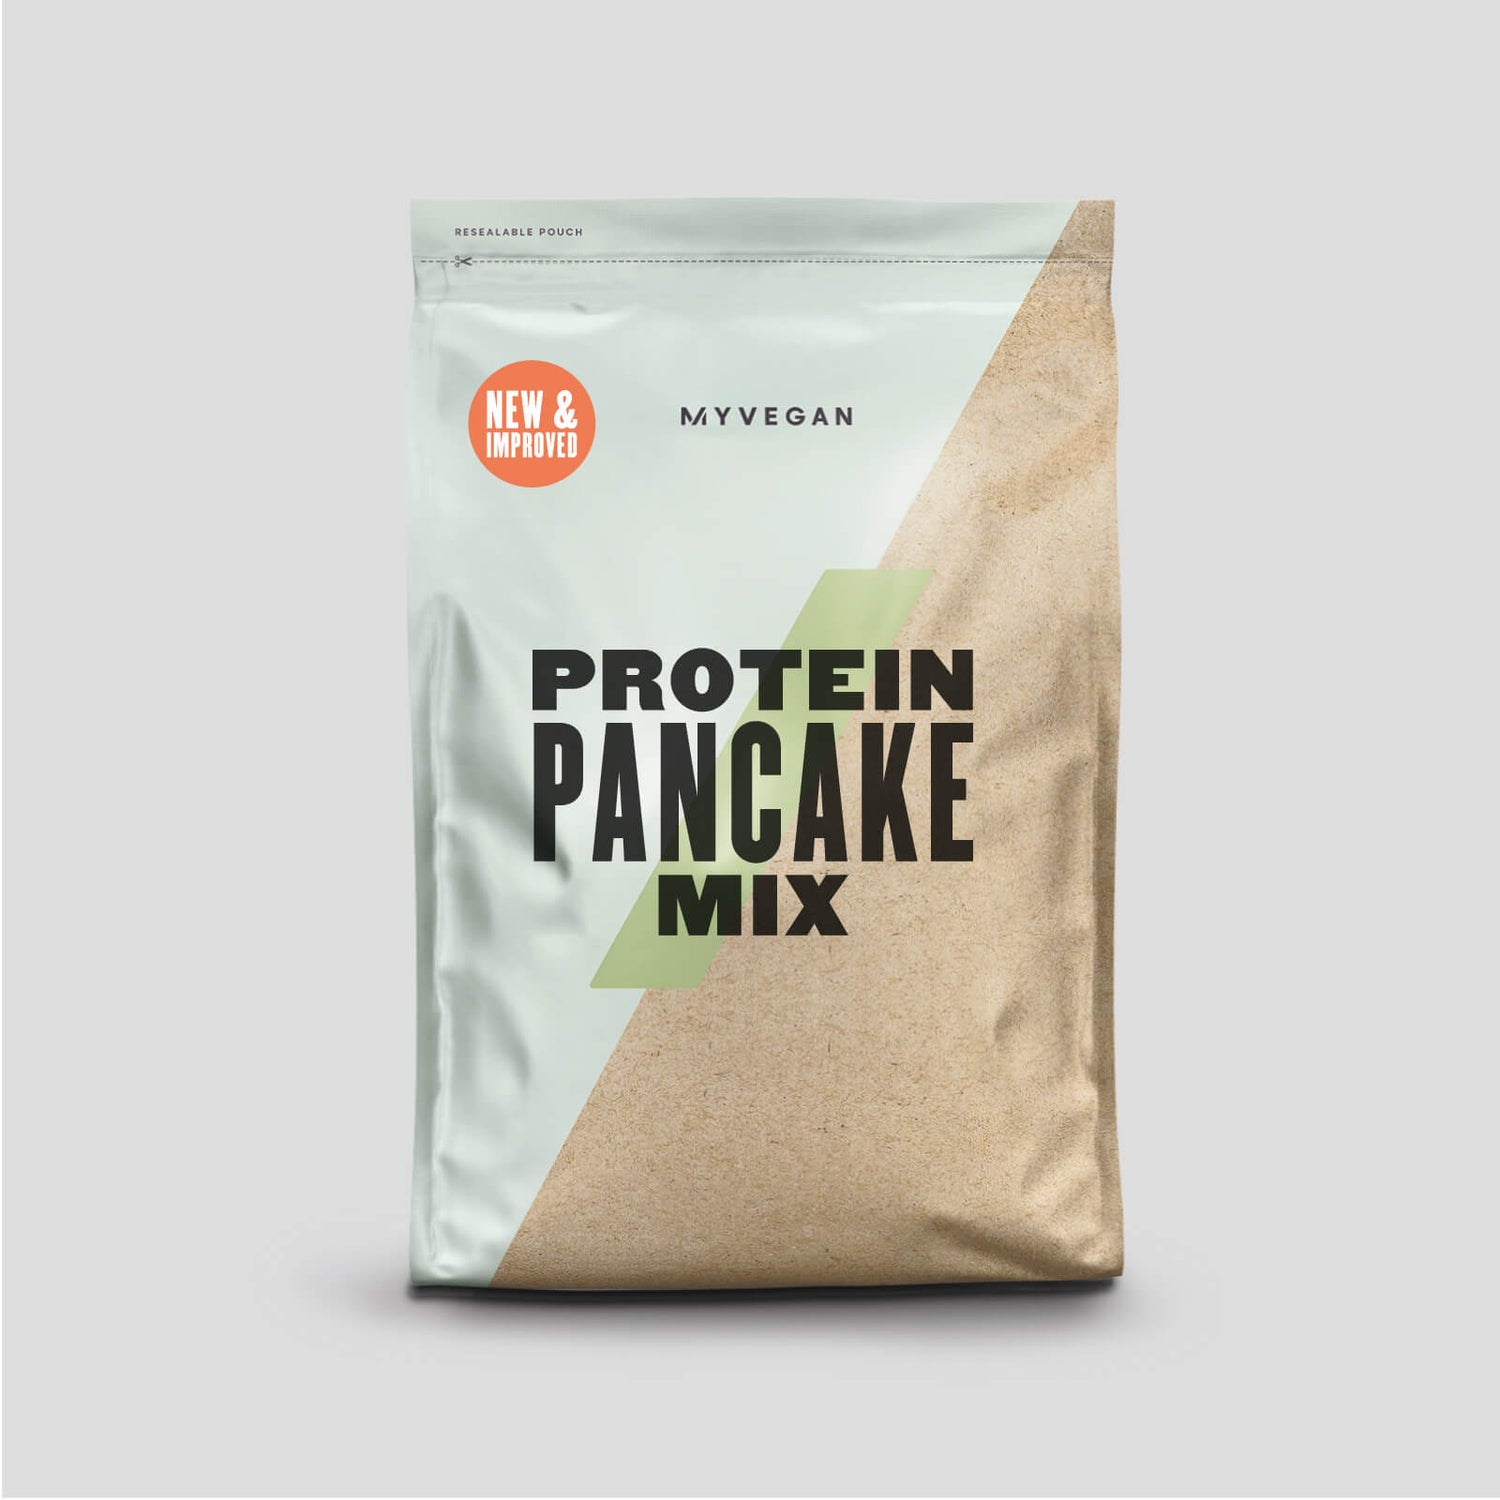 Protein Pancake Mix - proteinska mešavina za američke palačinke